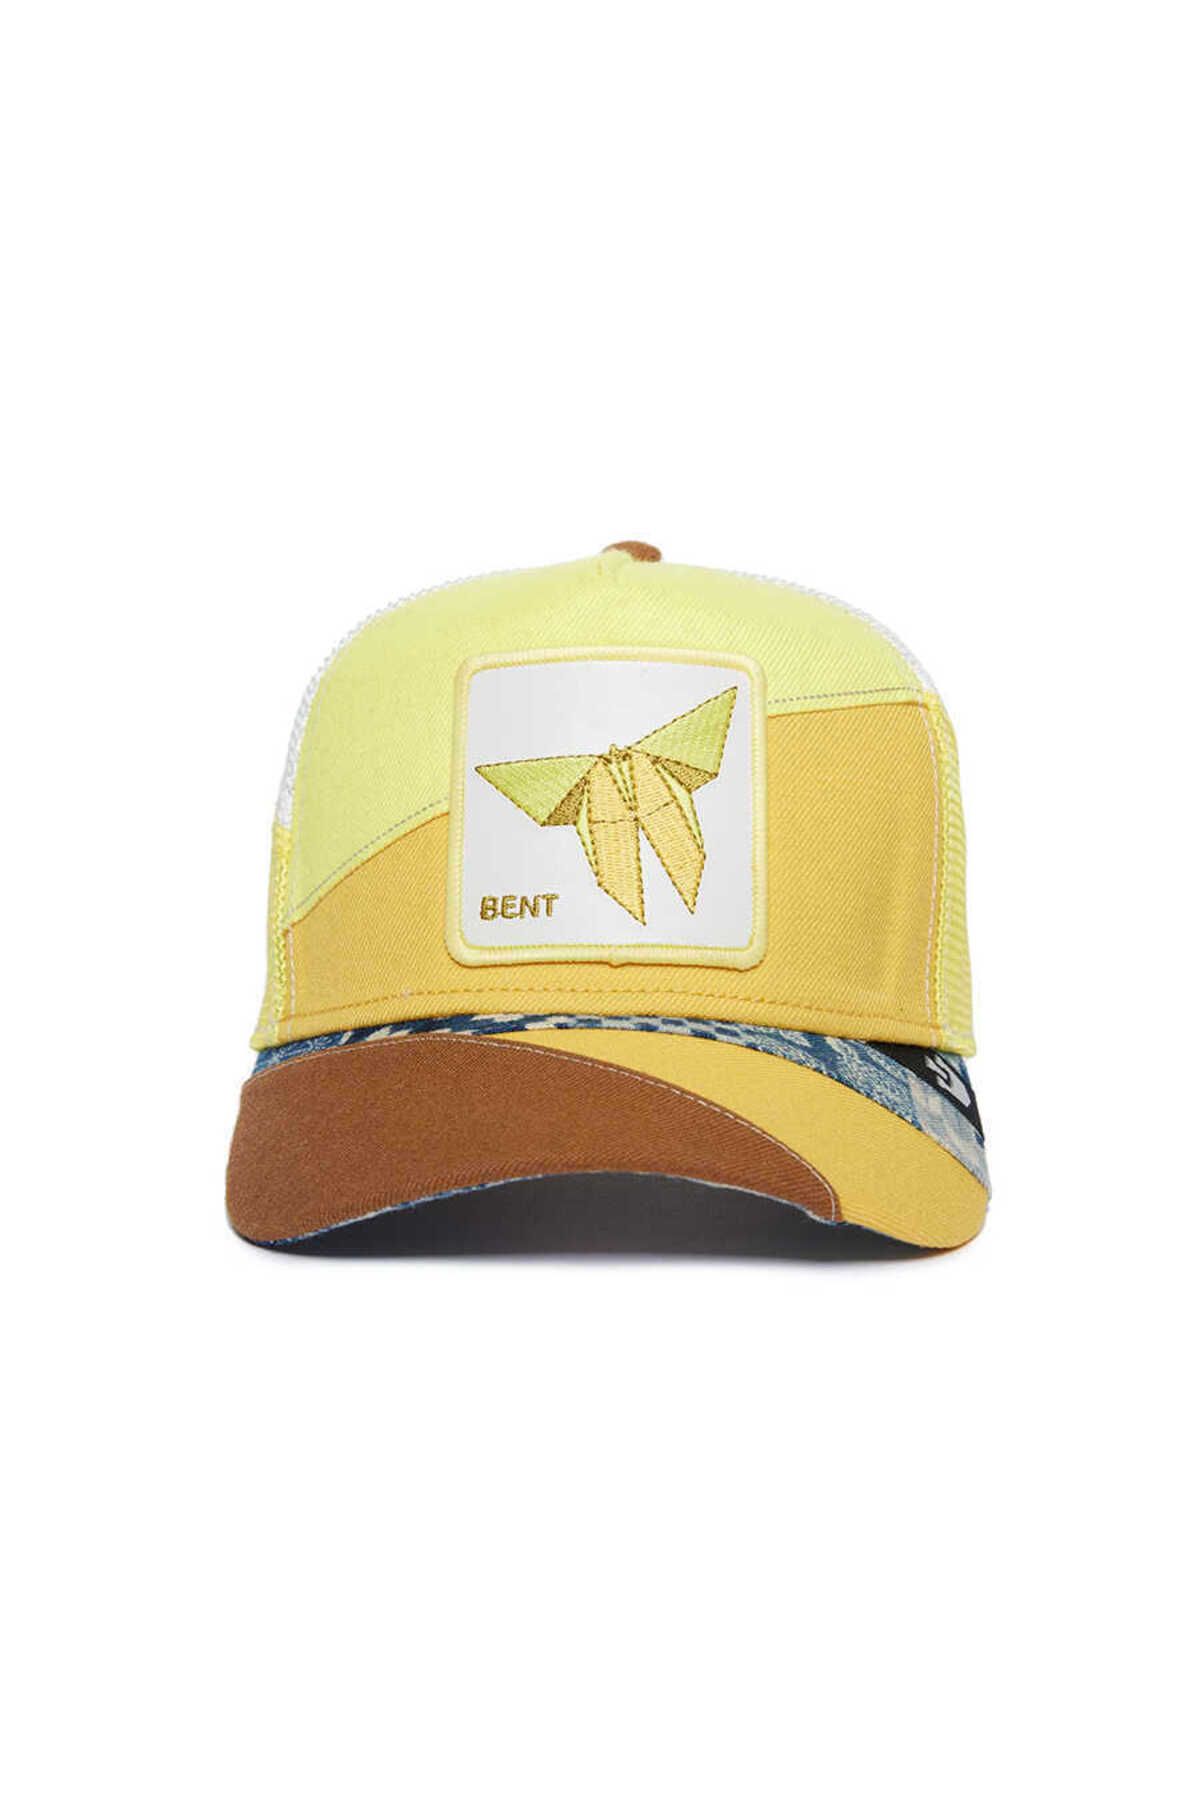 Goorin Bros . Fargami Transform ( Kelebek Figürlü ) Şapka 101-1406